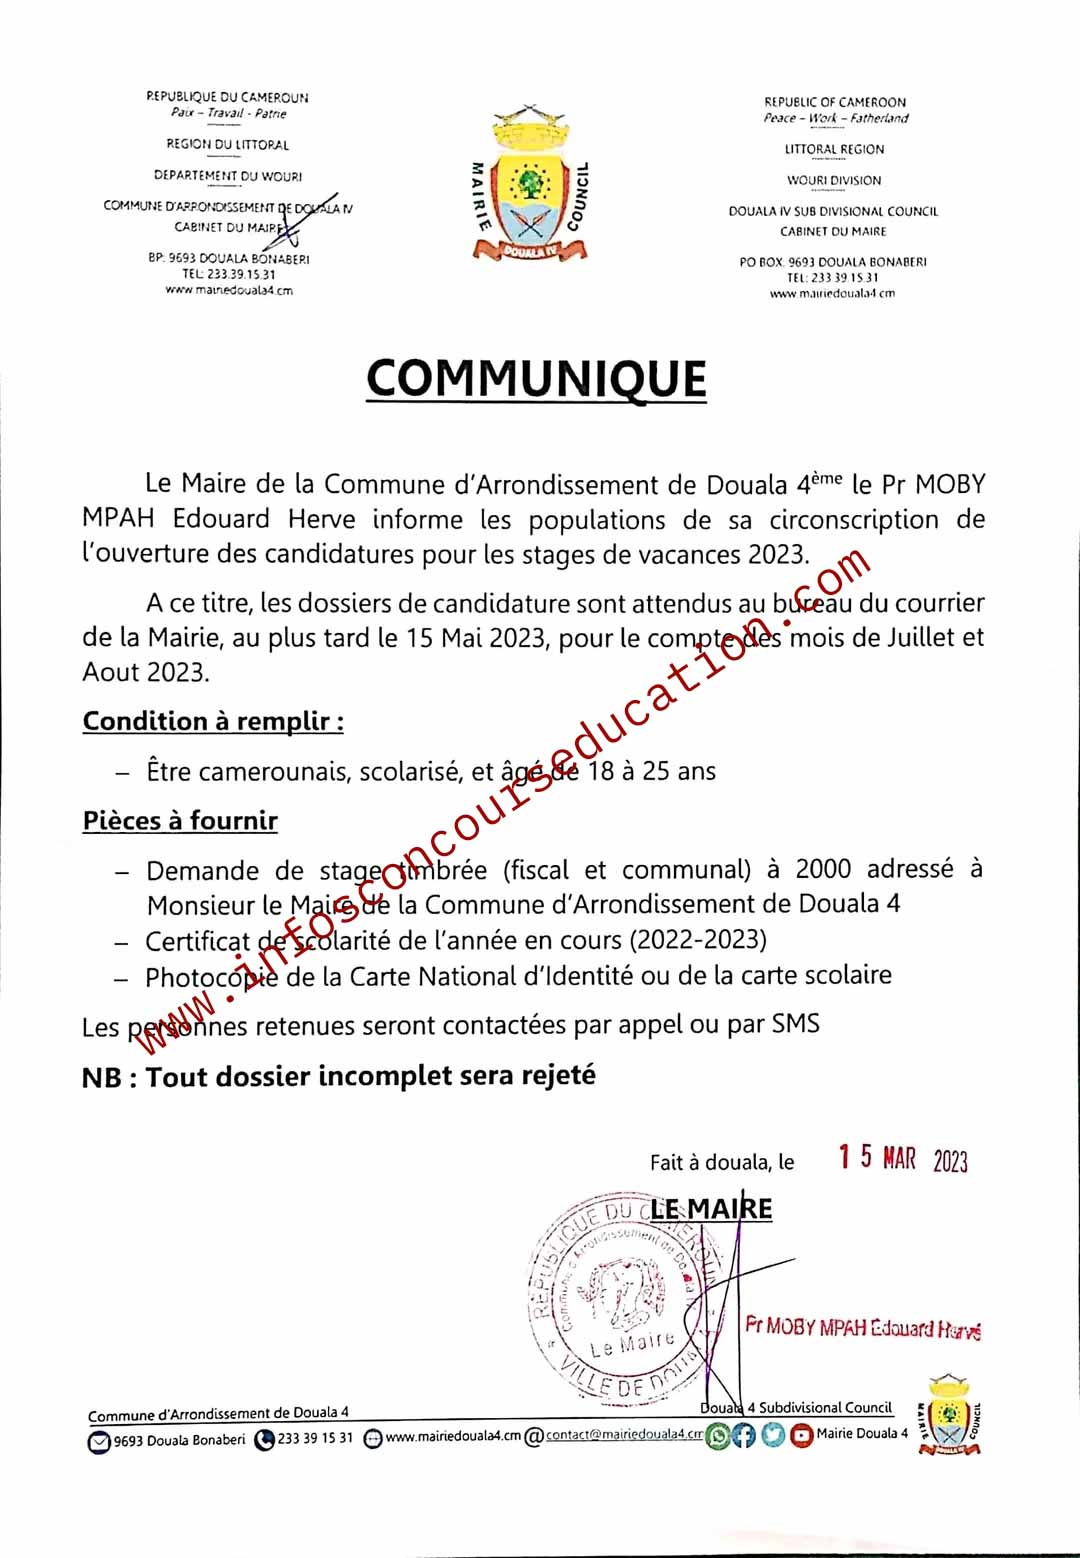 ouverture des candidatures pour les stages de vacances 2023 a la Commune d'Arrondissement de Douala 4ème.